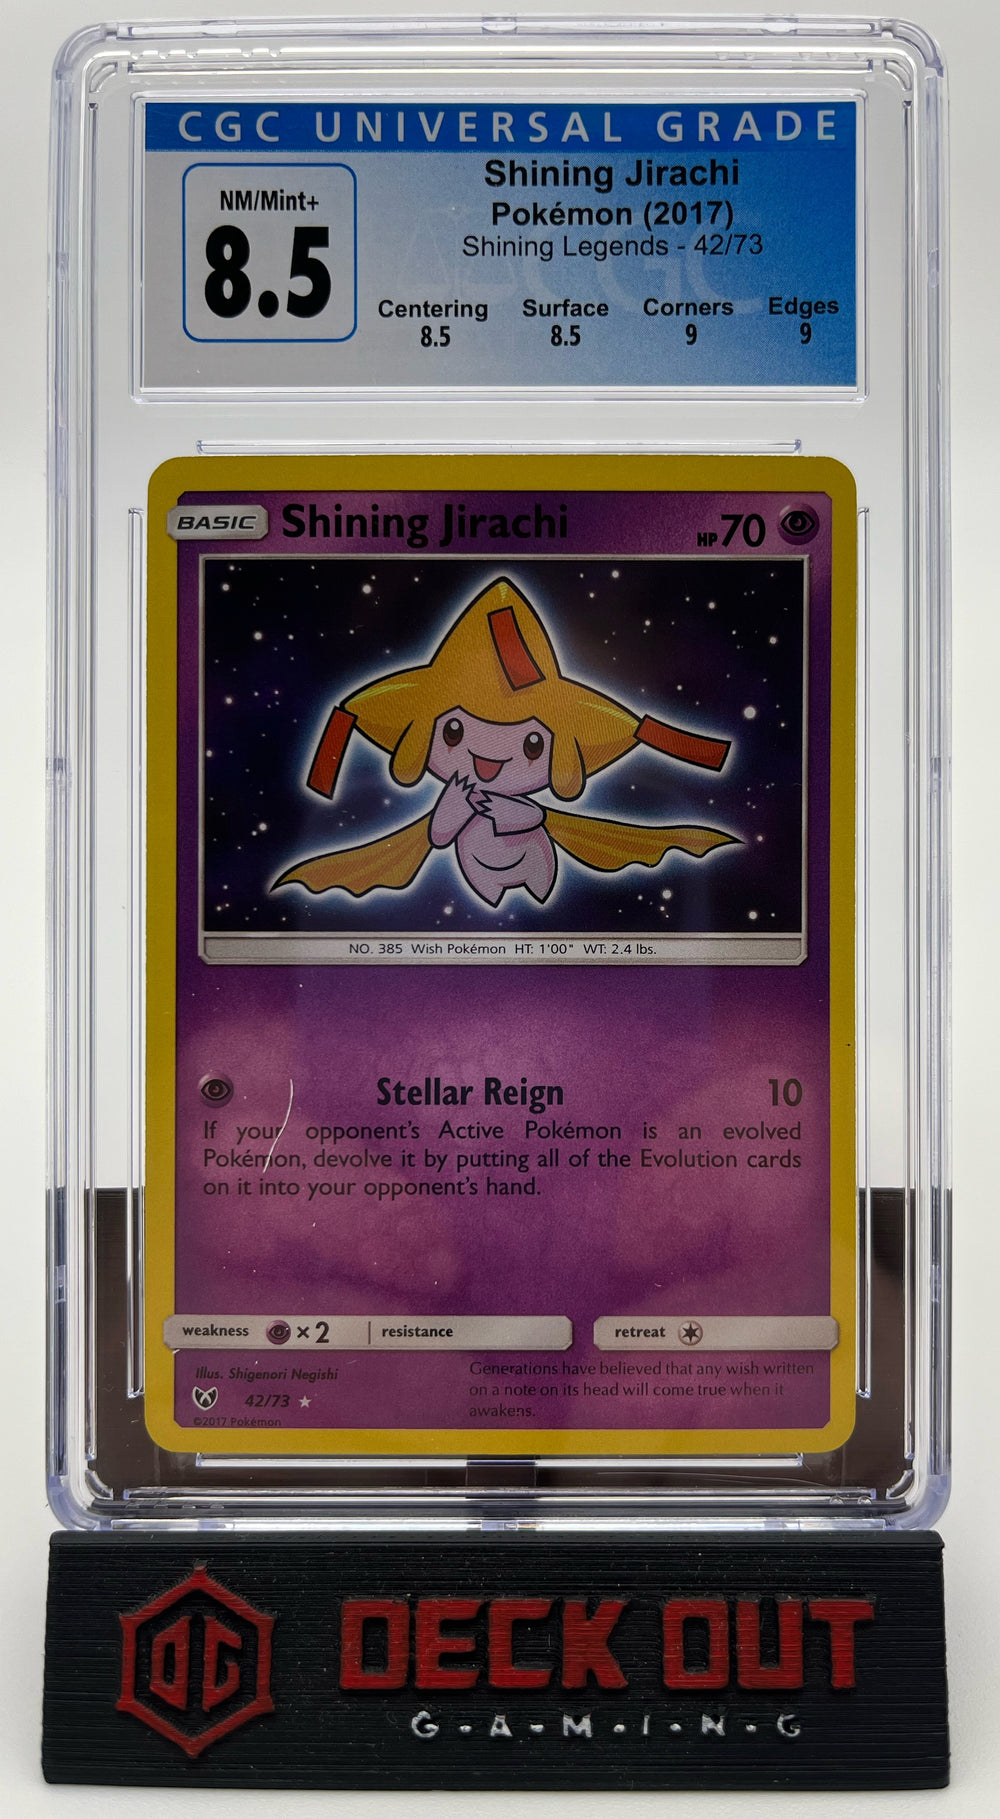 Shining Jirachi - Shining Legends - 42/73 - CGC 8.5 (8.5/8.5/9.0/9.0)